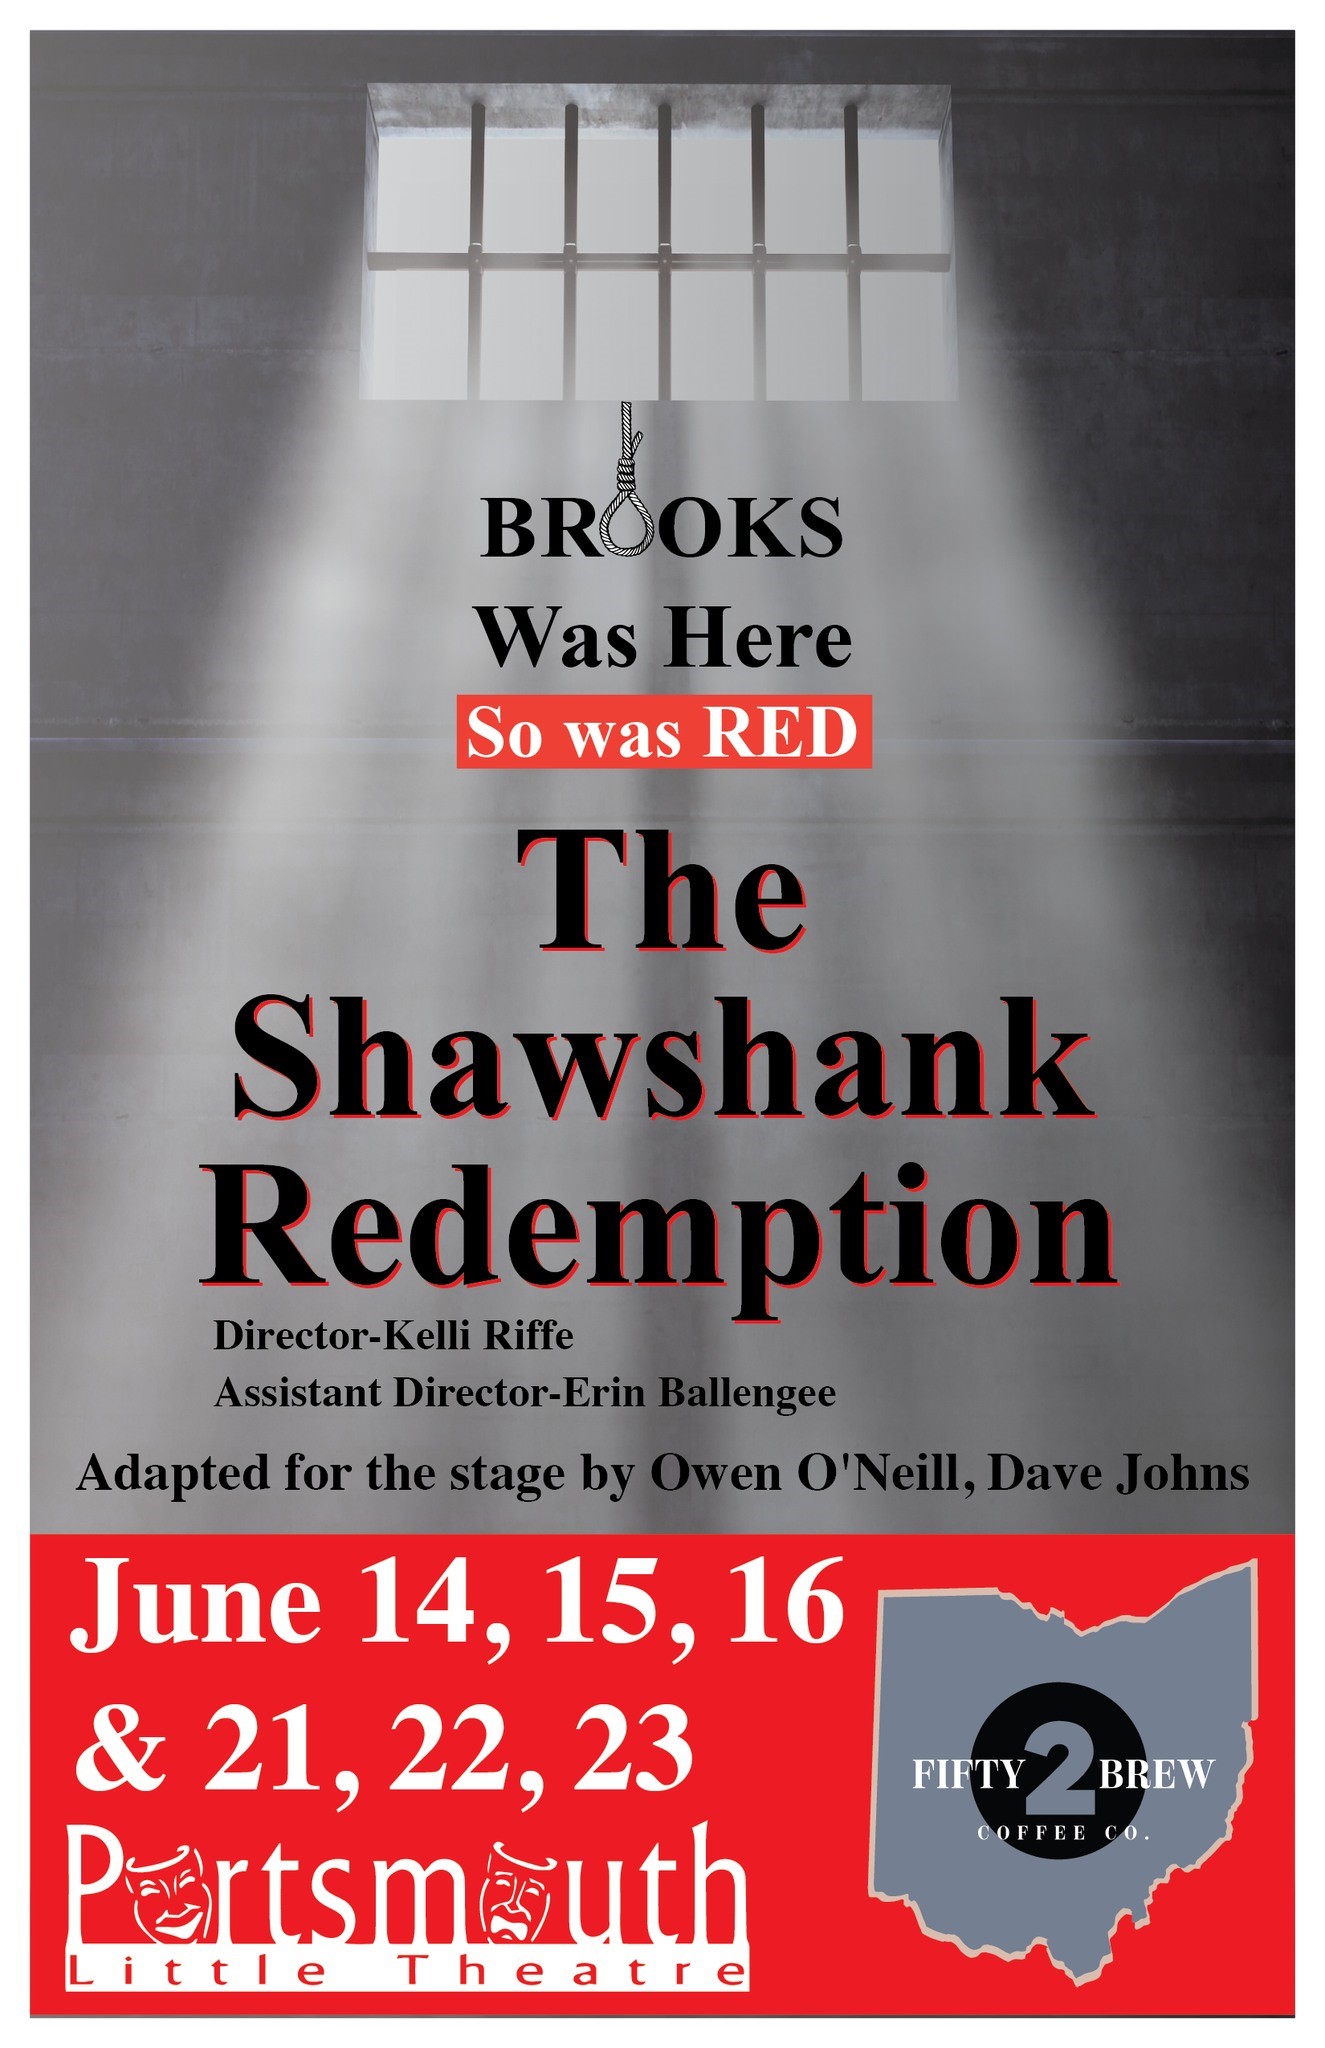 Shawshank Redemption  on juin 21, 19:30@Portsmouth Little Theatre - Choisissez un siège,Achetez des billets et obtenez des informations surPortsmouth Little Theatre 